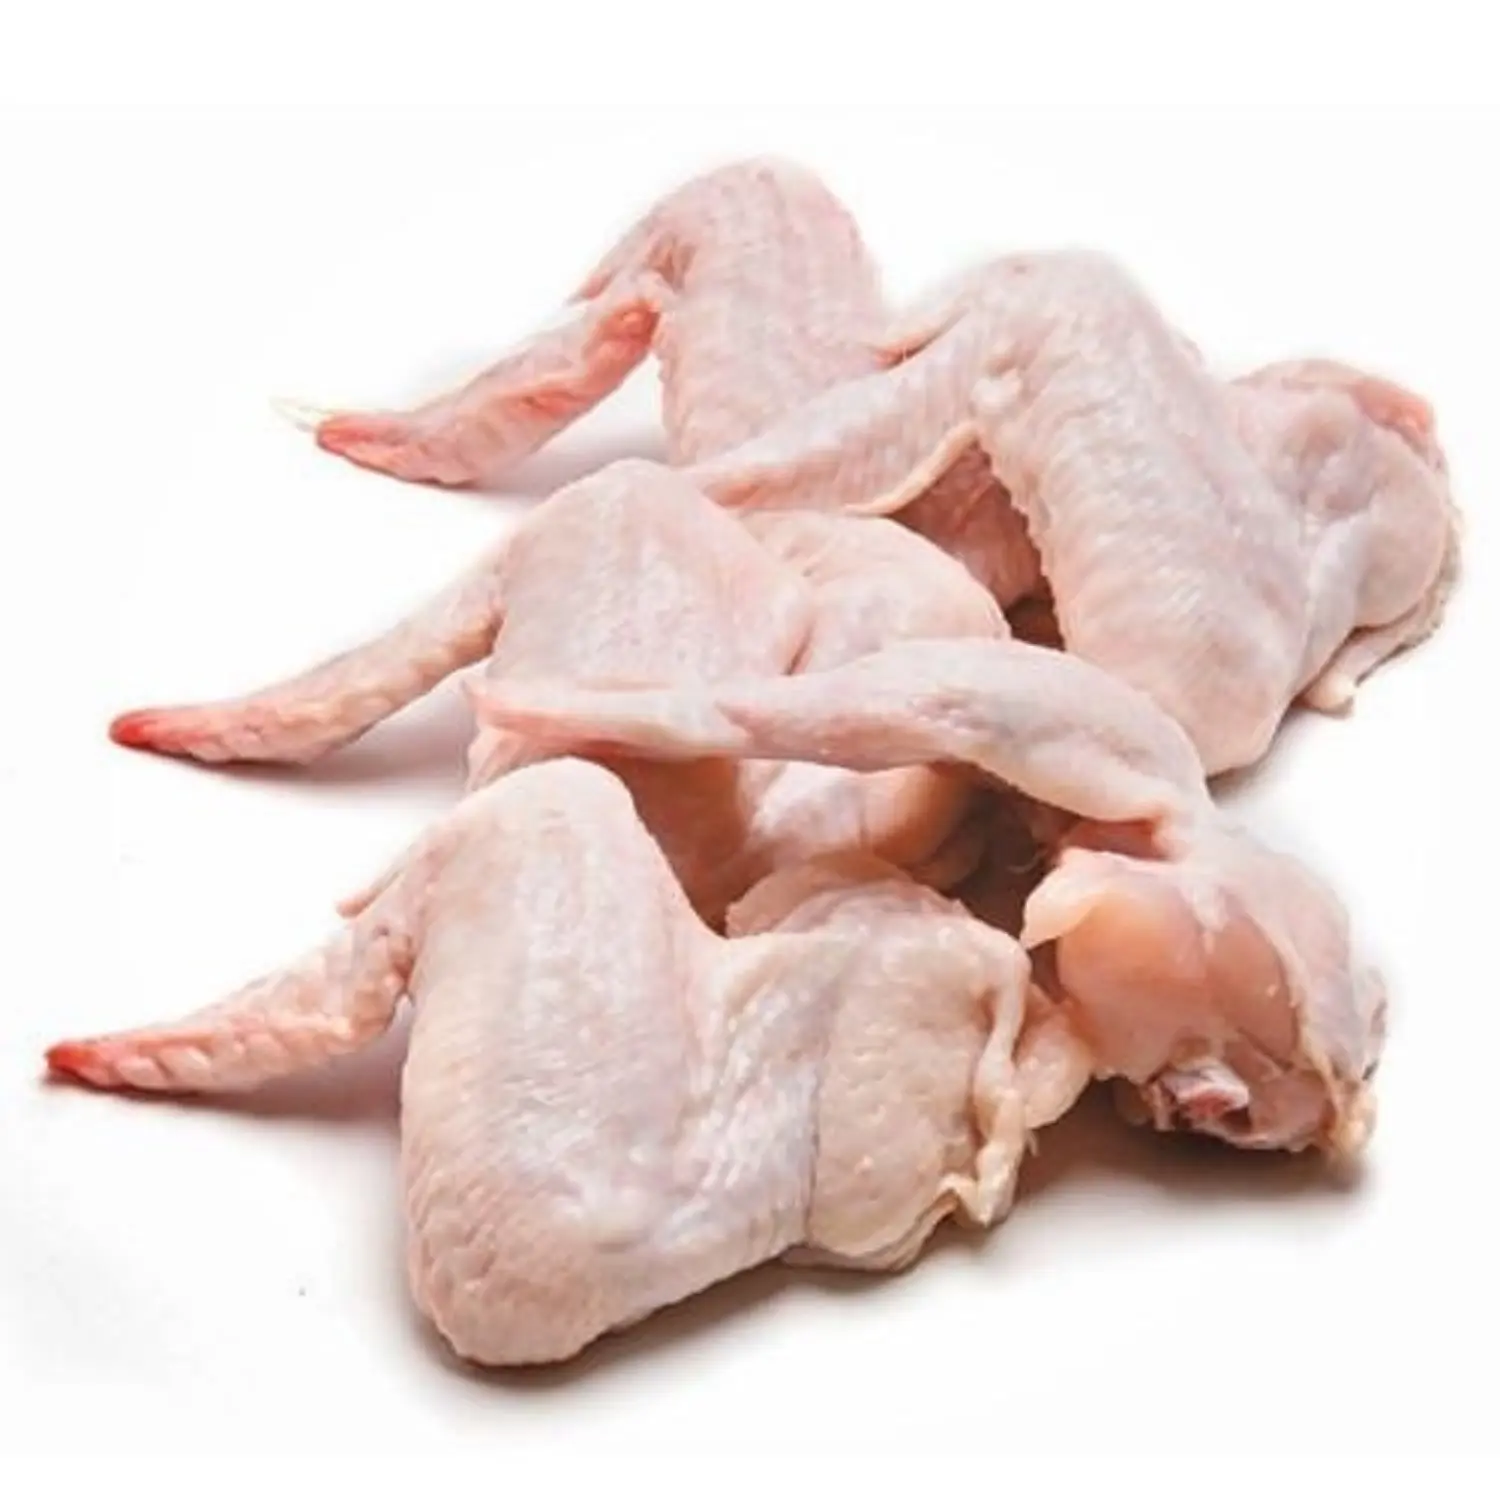 Замороженные куриные крылышки премиум класса подходят для приготовления замороженных куриных средних крылышек замороженных куриц от производителя из Канады